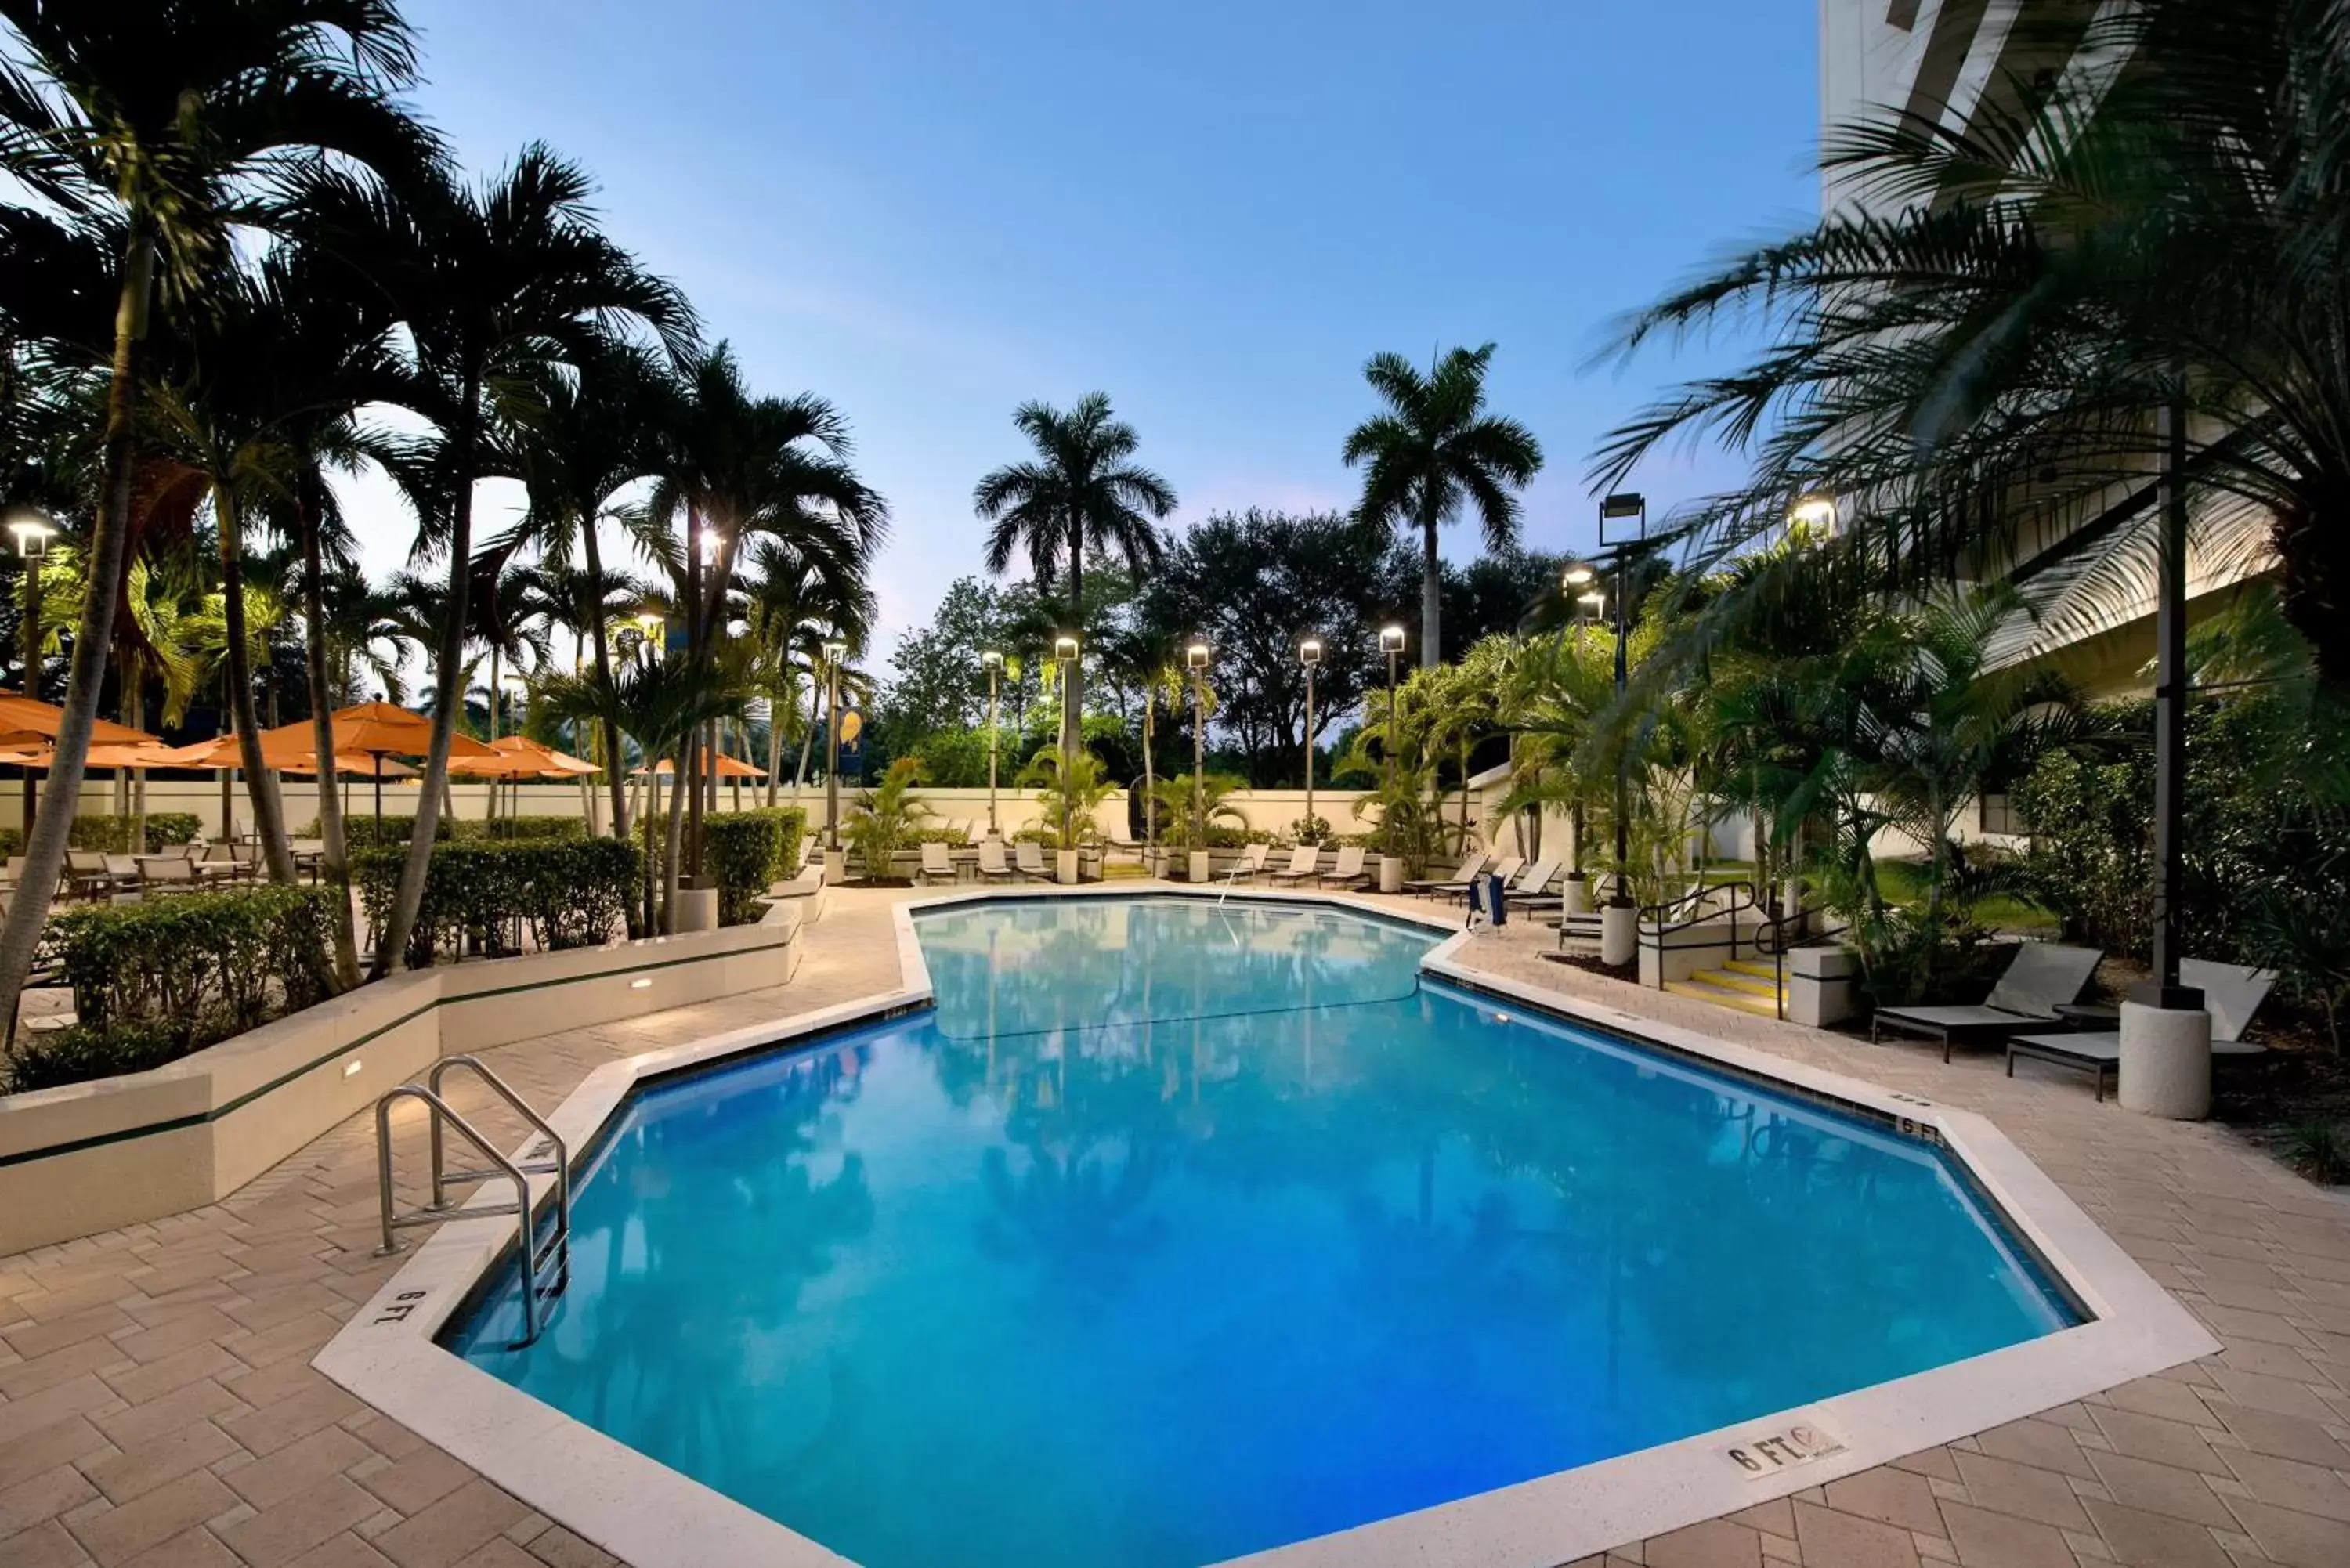 Swimming Pool in Embassy Suites Boca Raton